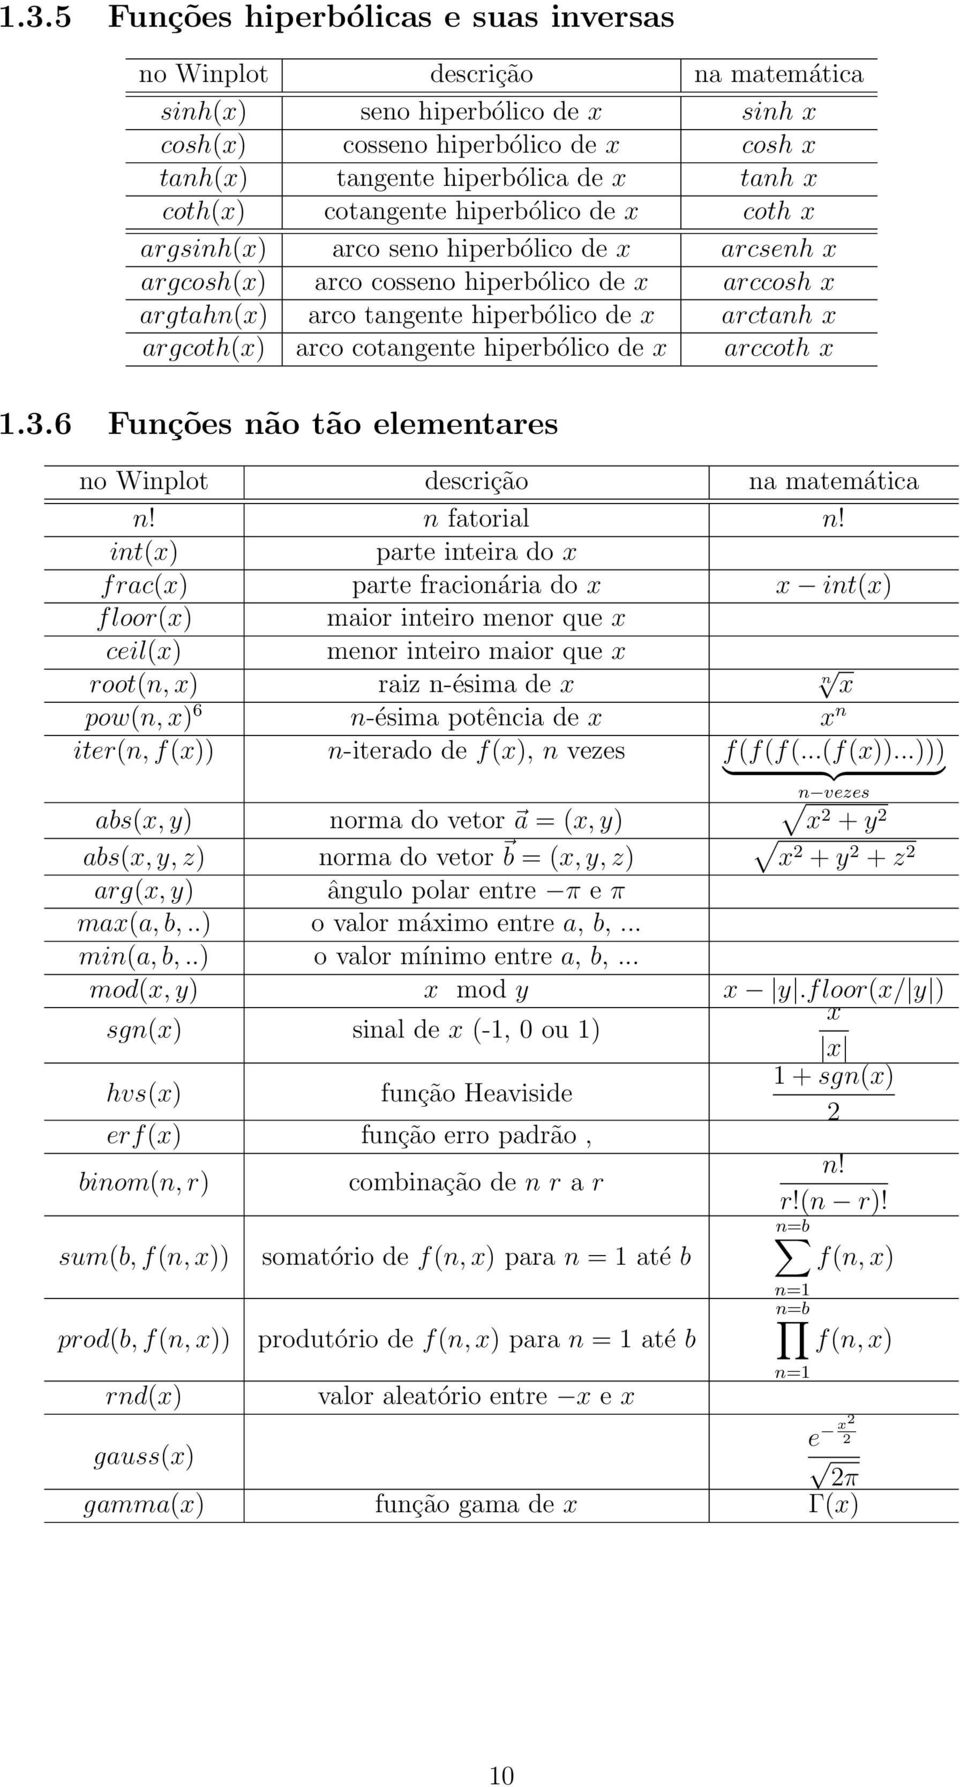 argcoth(x) arco cotangente hiperbólico de x arccoth x 1.3.6 Funções não tão elementares no Winplot descrição na matemática n! n fatorial n!